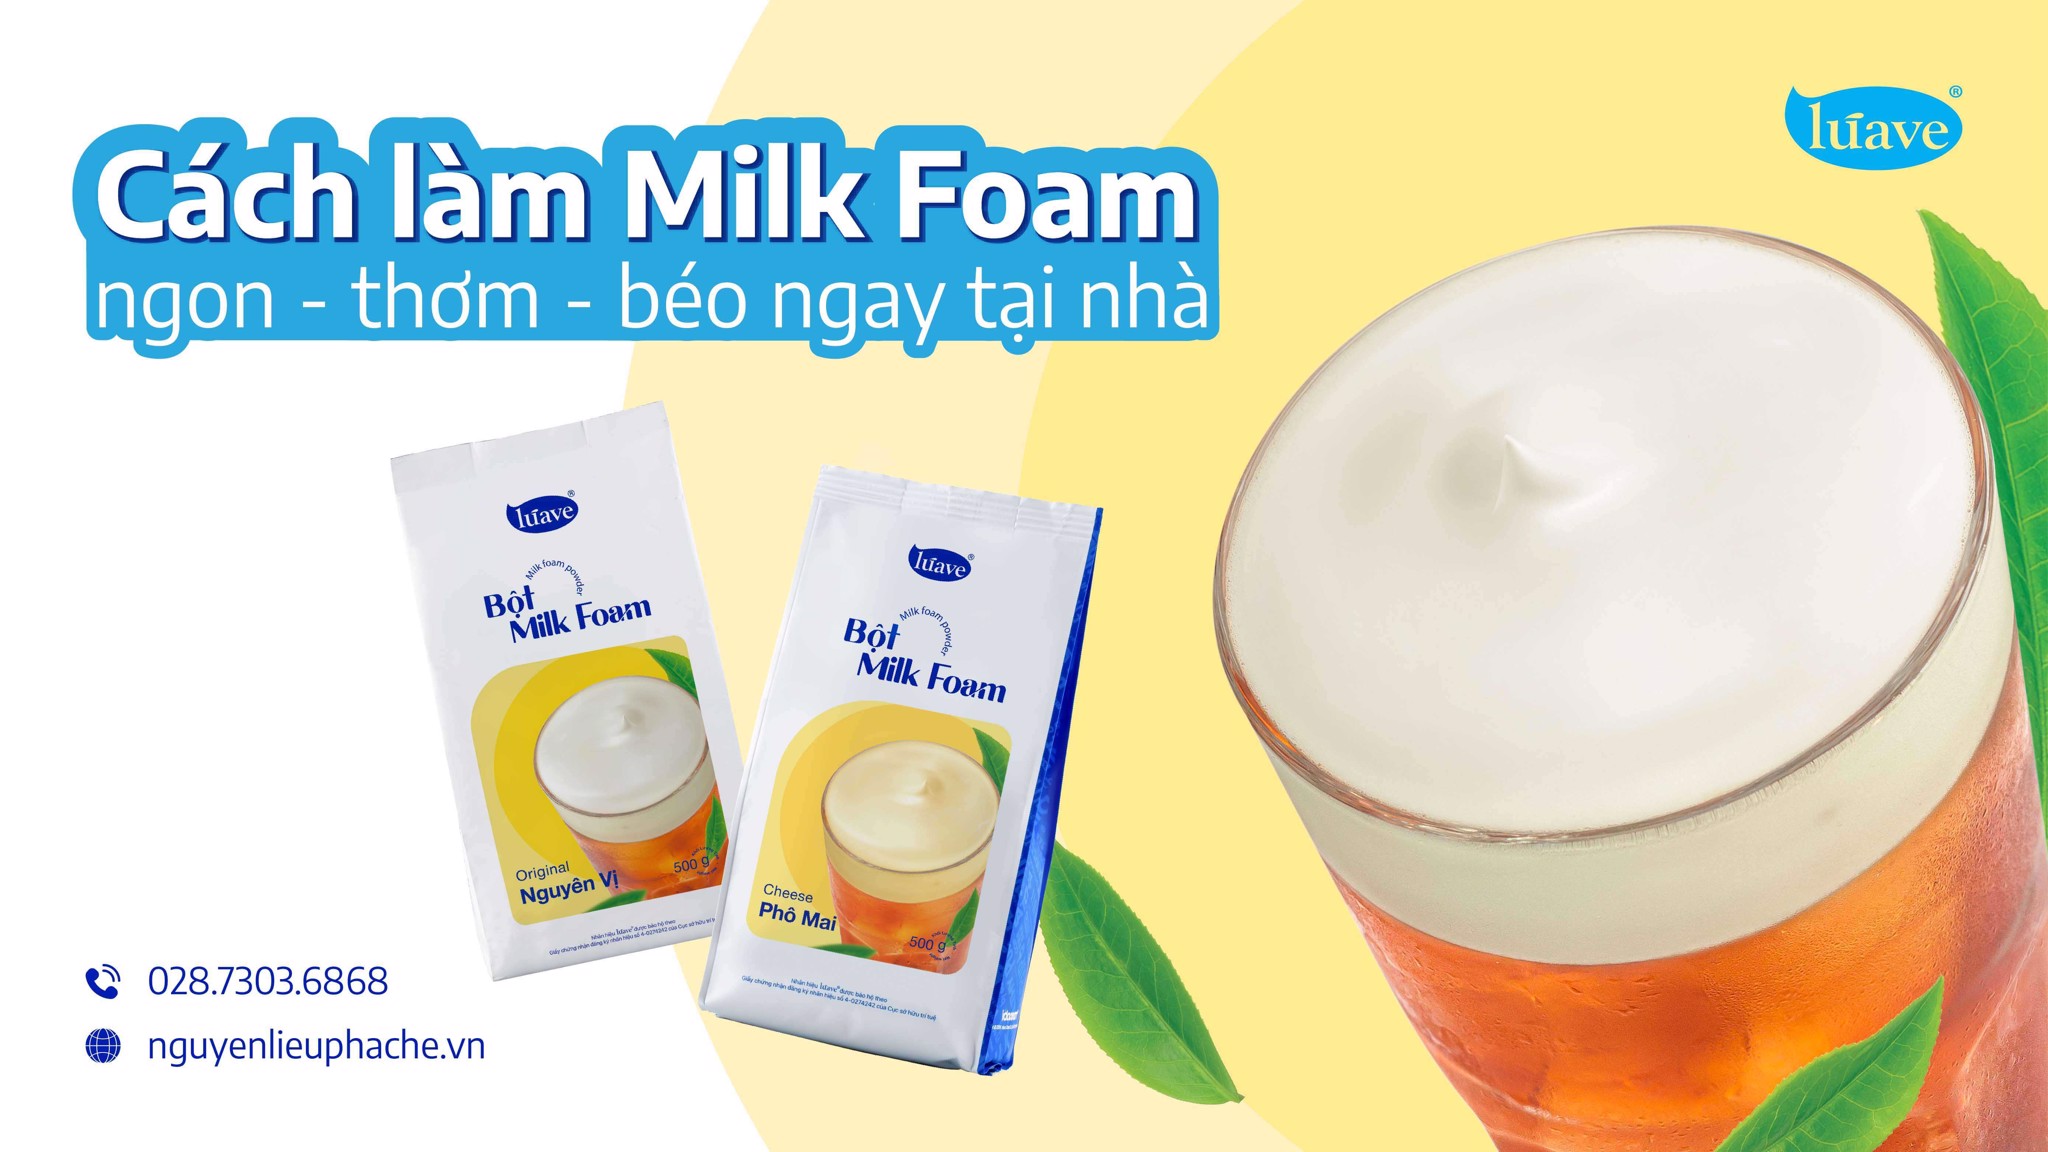 Cách làm milk foam bằng bột đơn giản tại nhà